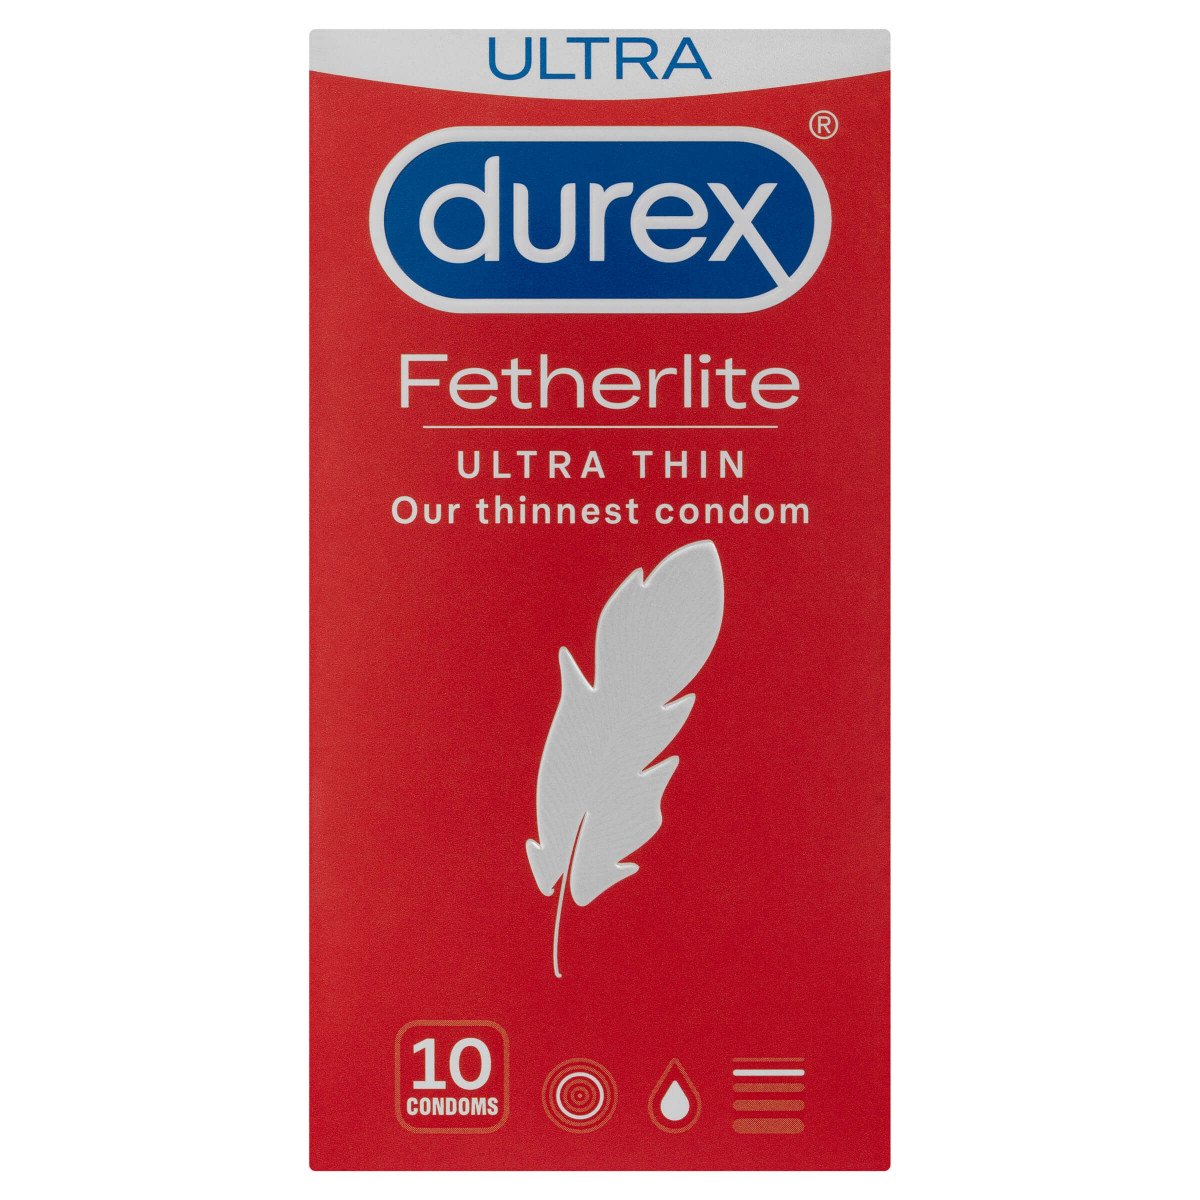 Durex Featherlite Condoms Ultra Thin 10 Pack Chemist Outlet